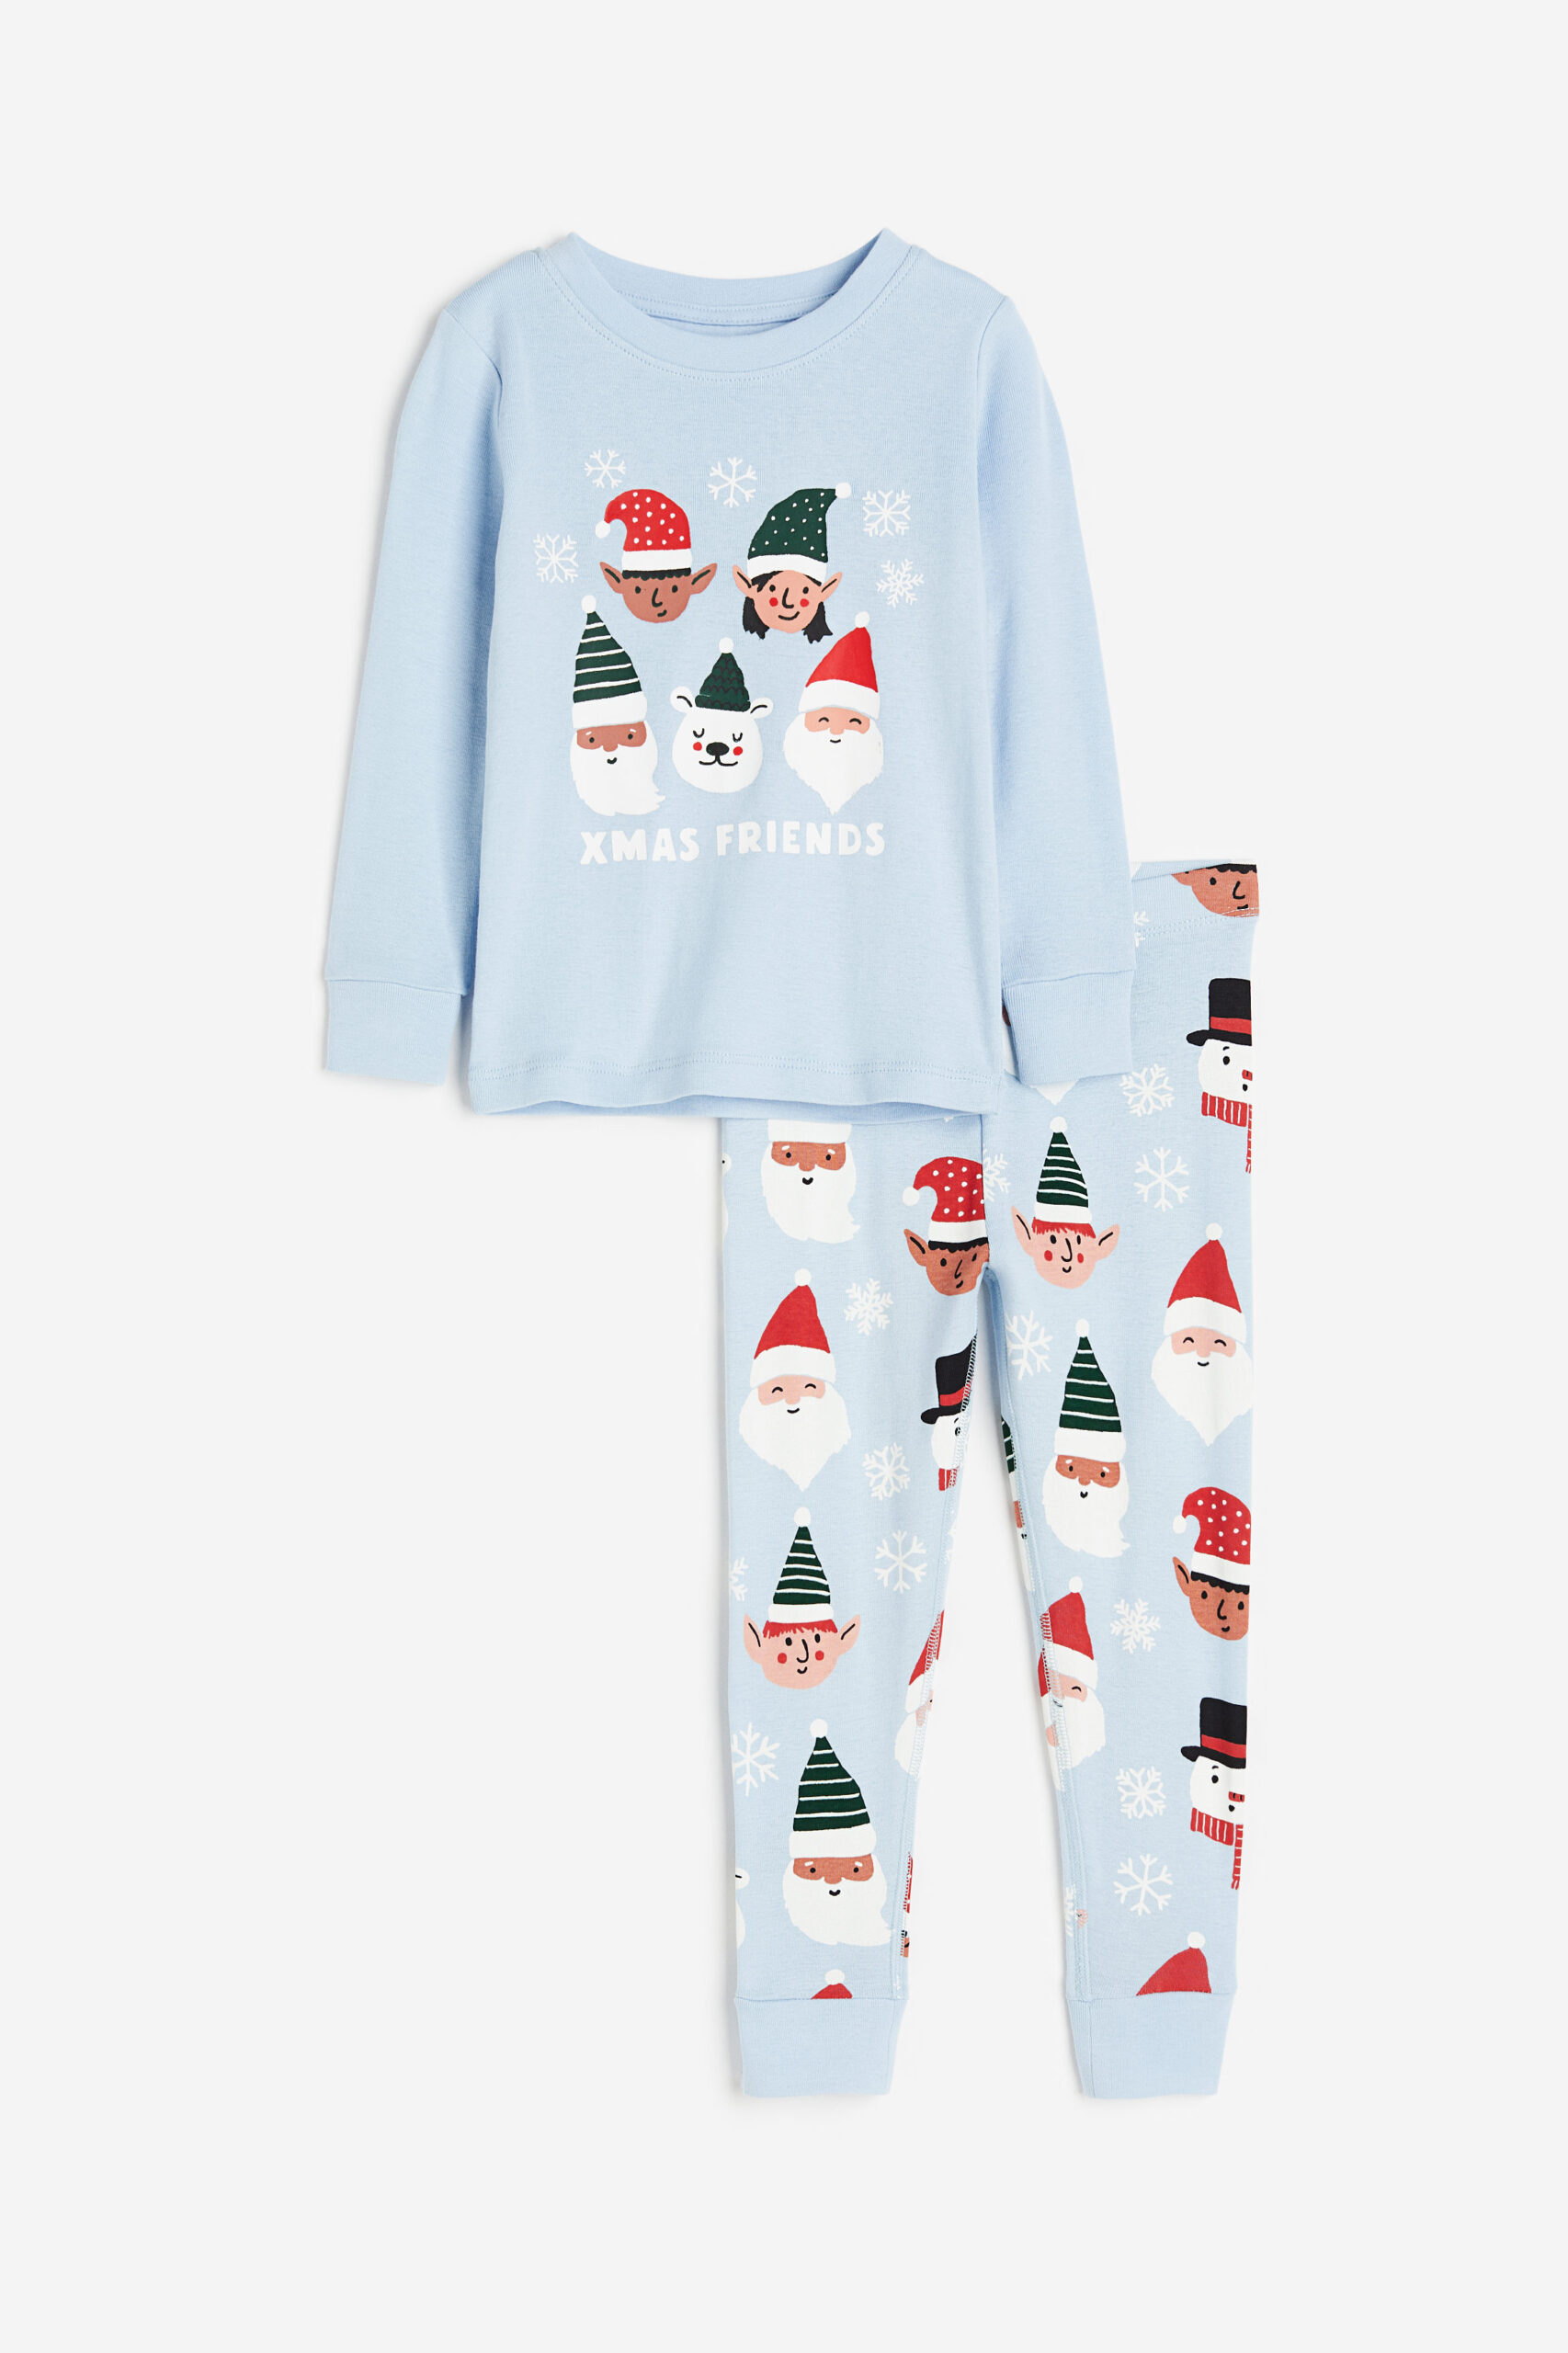 Christmas patterned blue pajamas